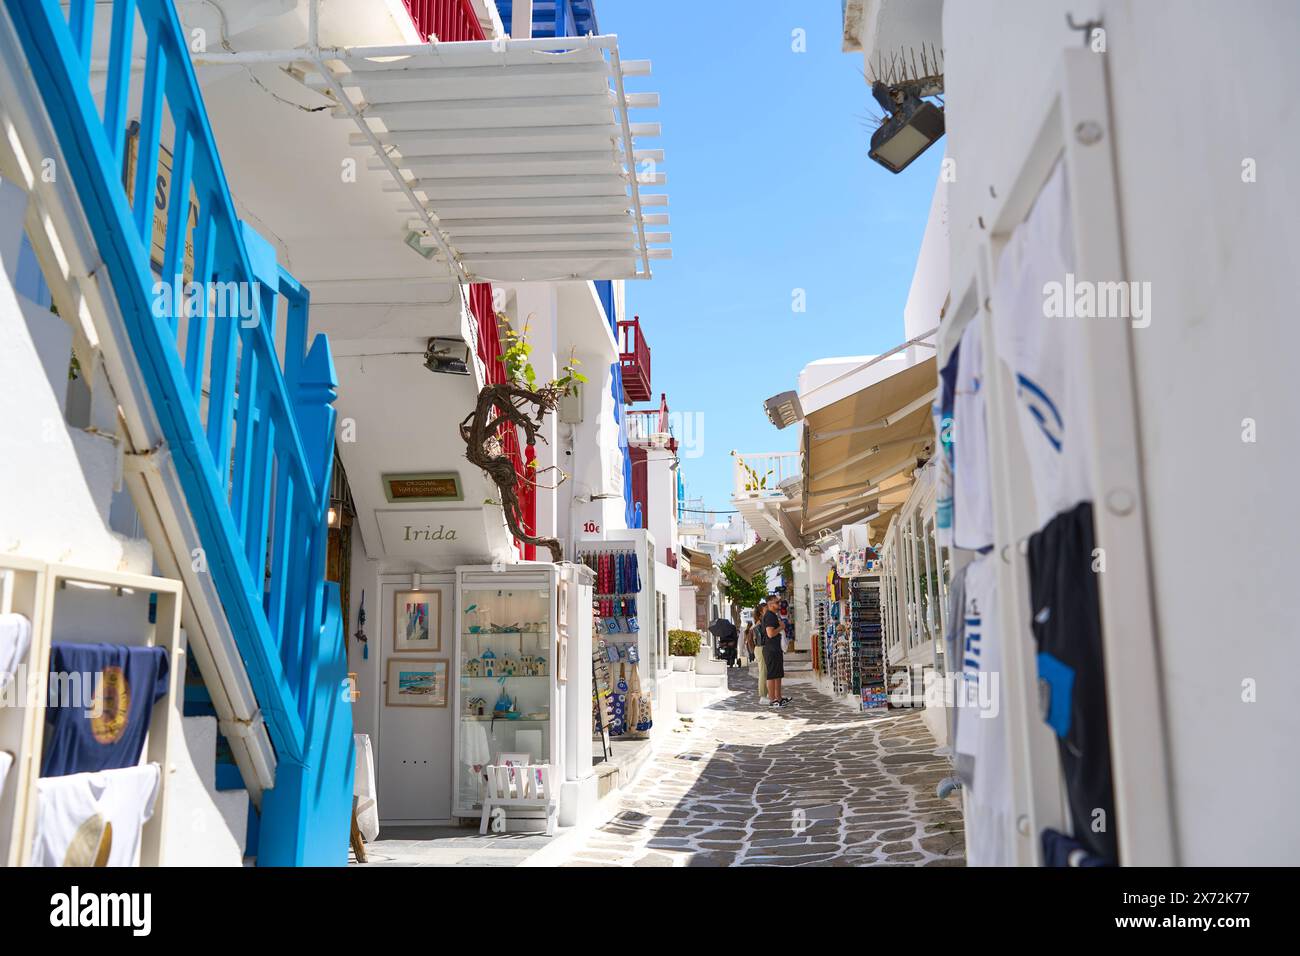 Mykonos, Griechenland - 7. Mai 2024: Themenbildurlaub auf der Insel Mykonos in Griechenland. Typisch weiße Häuser mit blauen Türen und Rollläden *** Themenbild Urlaub auf der Insel Mykonos in Griechenland. Typische weiße Häuser mit blauen Türen und Fensterläden Stockfoto